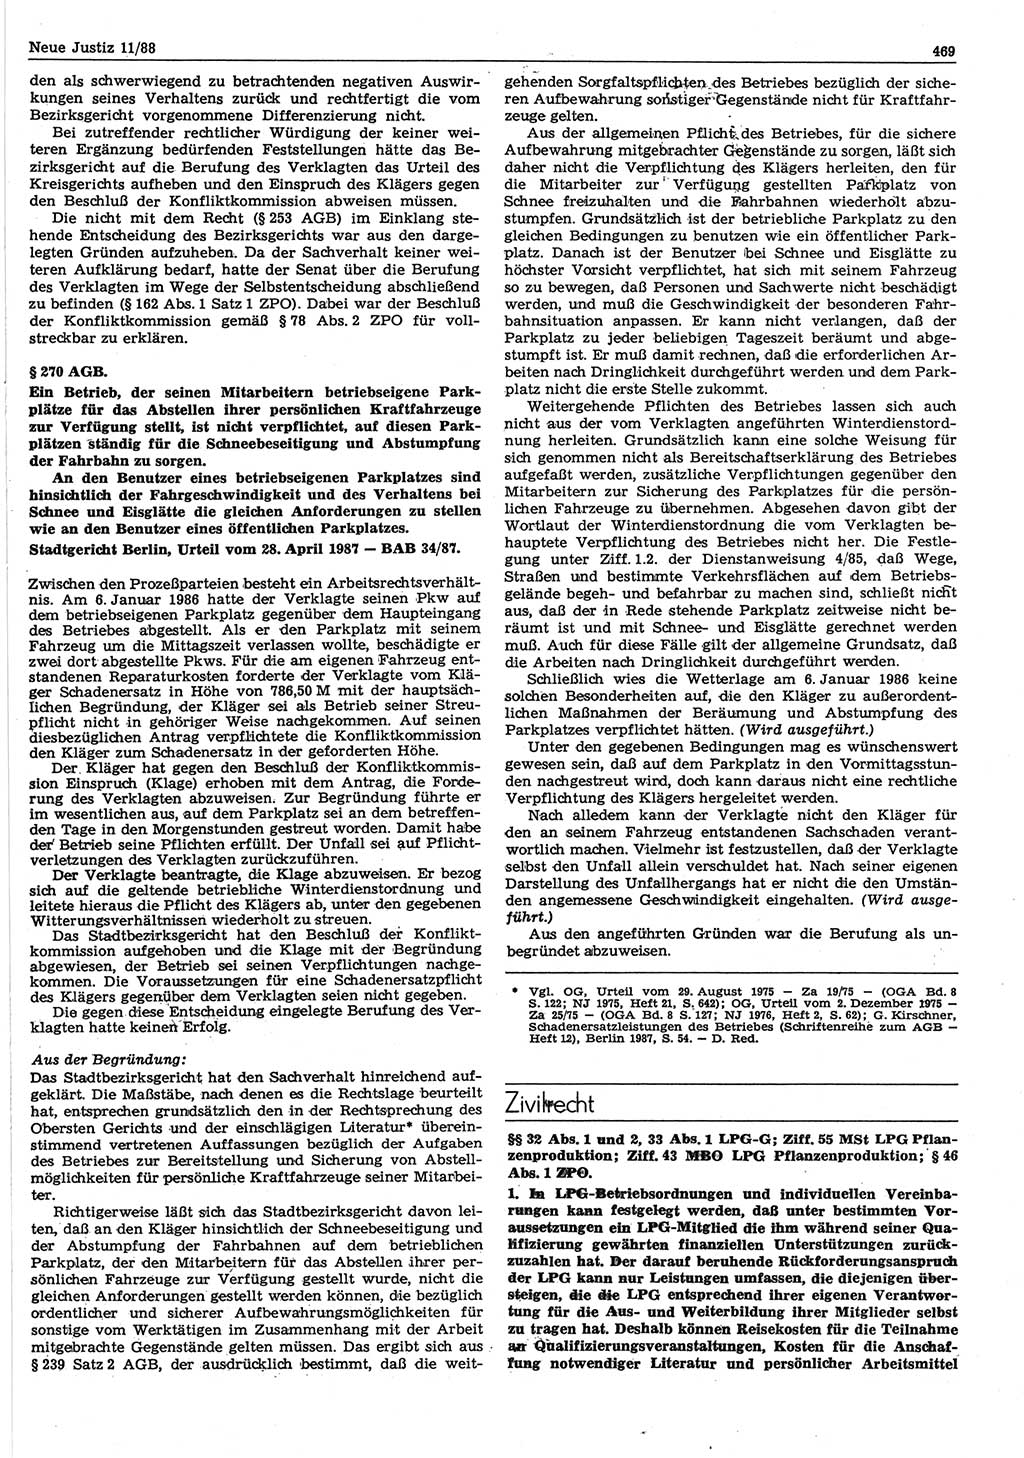 Neue Justiz (NJ), Zeitschrift für sozialistisches Recht und Gesetzlichkeit [Deutsche Demokratische Republik (DDR)], 42. Jahrgang 1988, Seite 469 (NJ DDR 1988, S. 469)